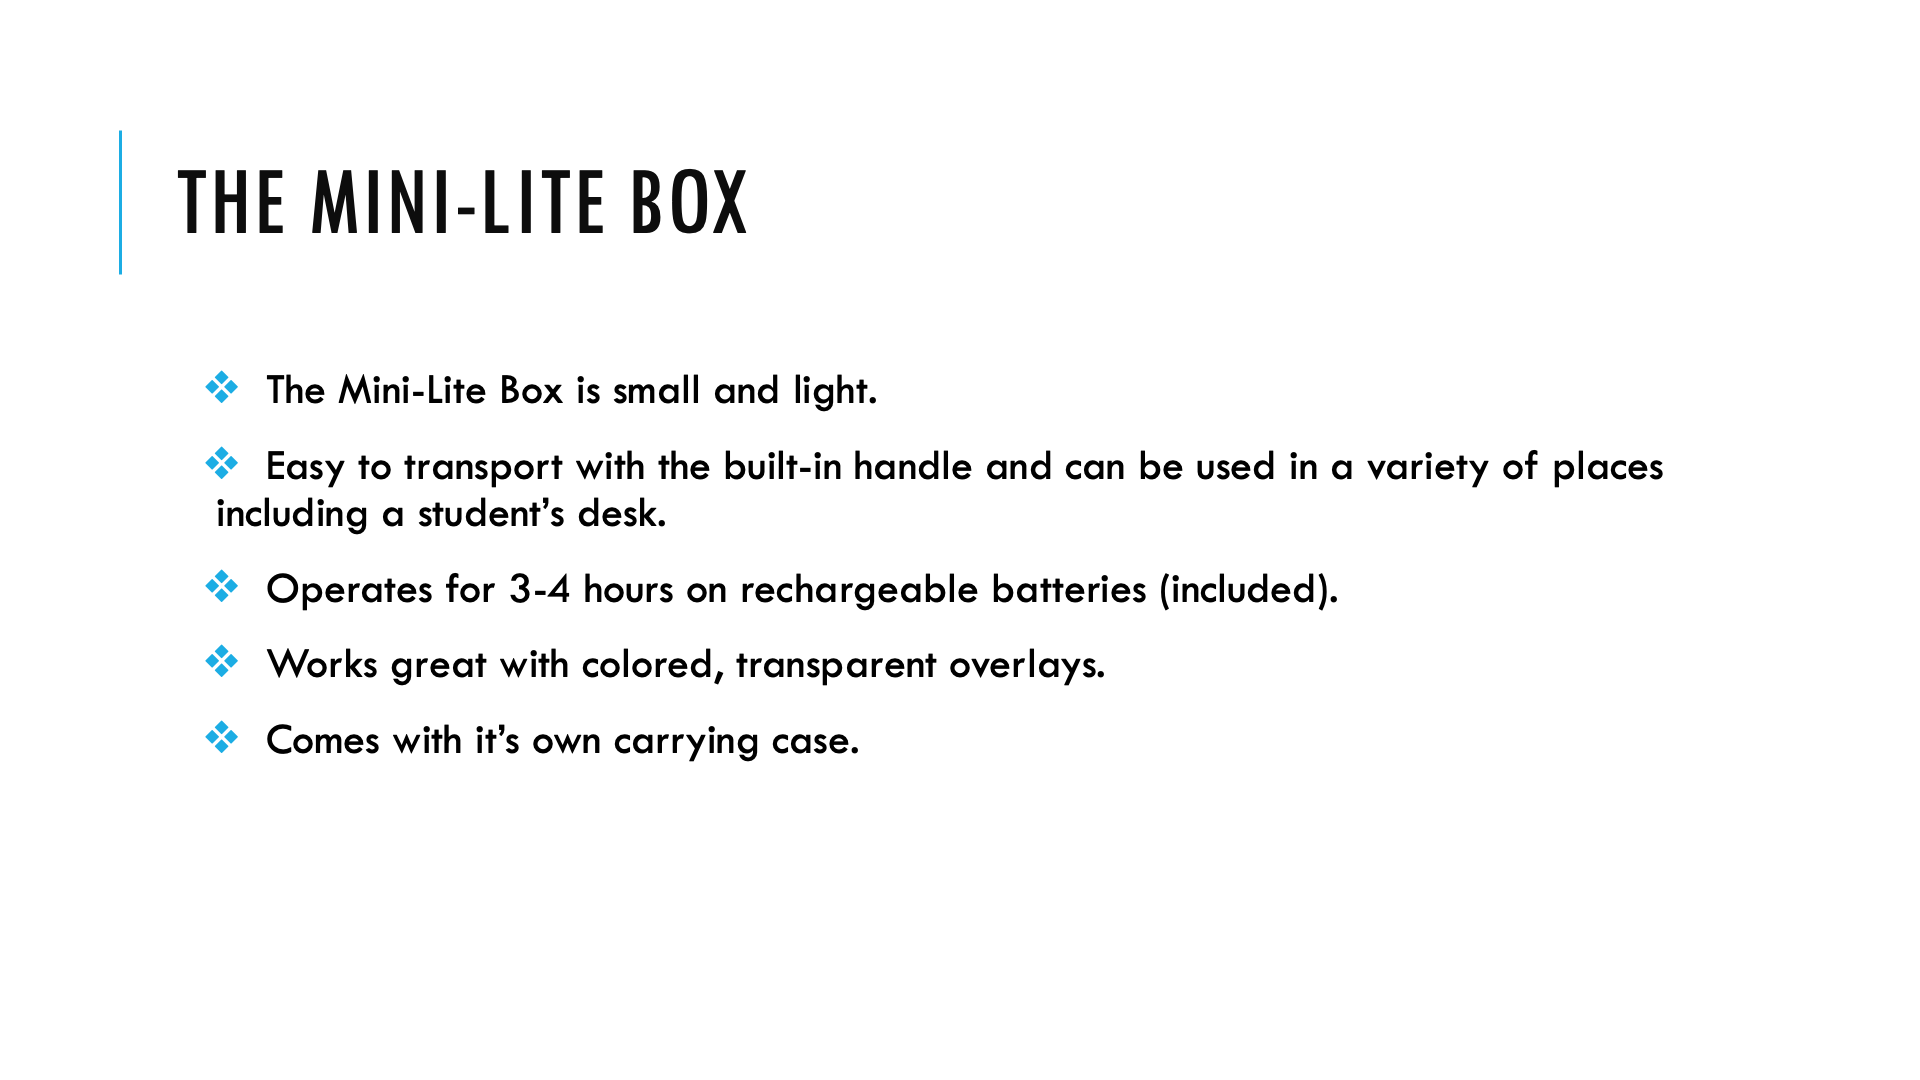 The Mini-Lite Box